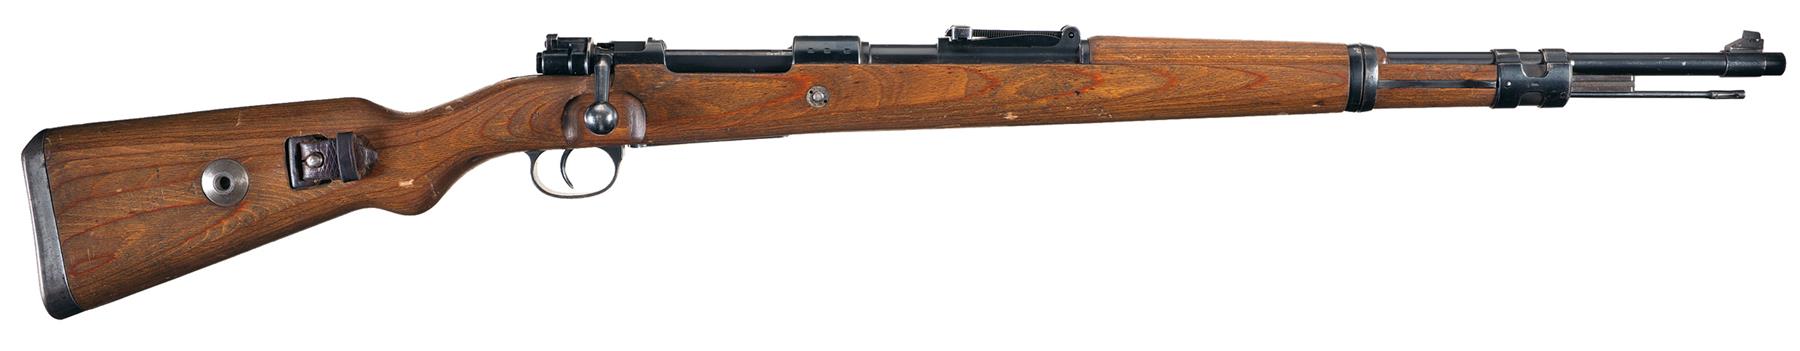 価格8 byf 41 Mod.98 ライフル 木製 ボルトアクション エアーコッキング スナイパー JPSTIA 0368 スコープ付き エアガン